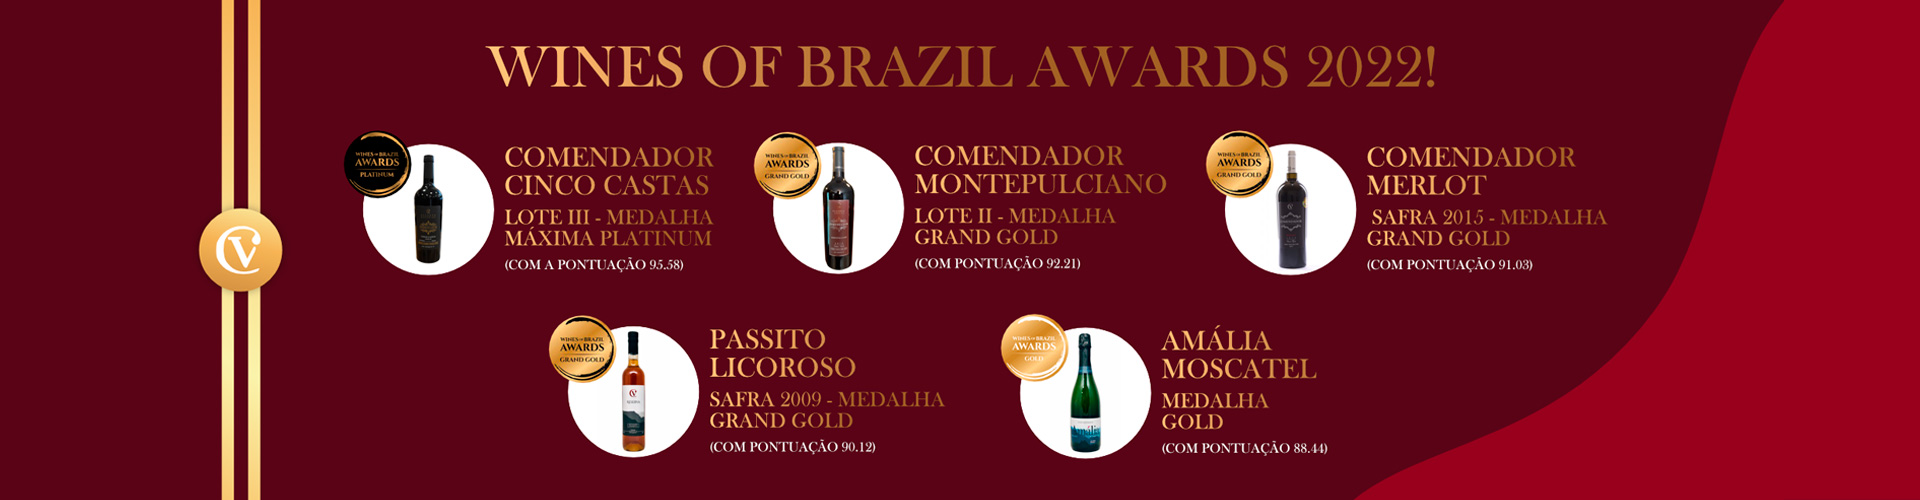 banner vinhos premiados Wines of Brazil Awards